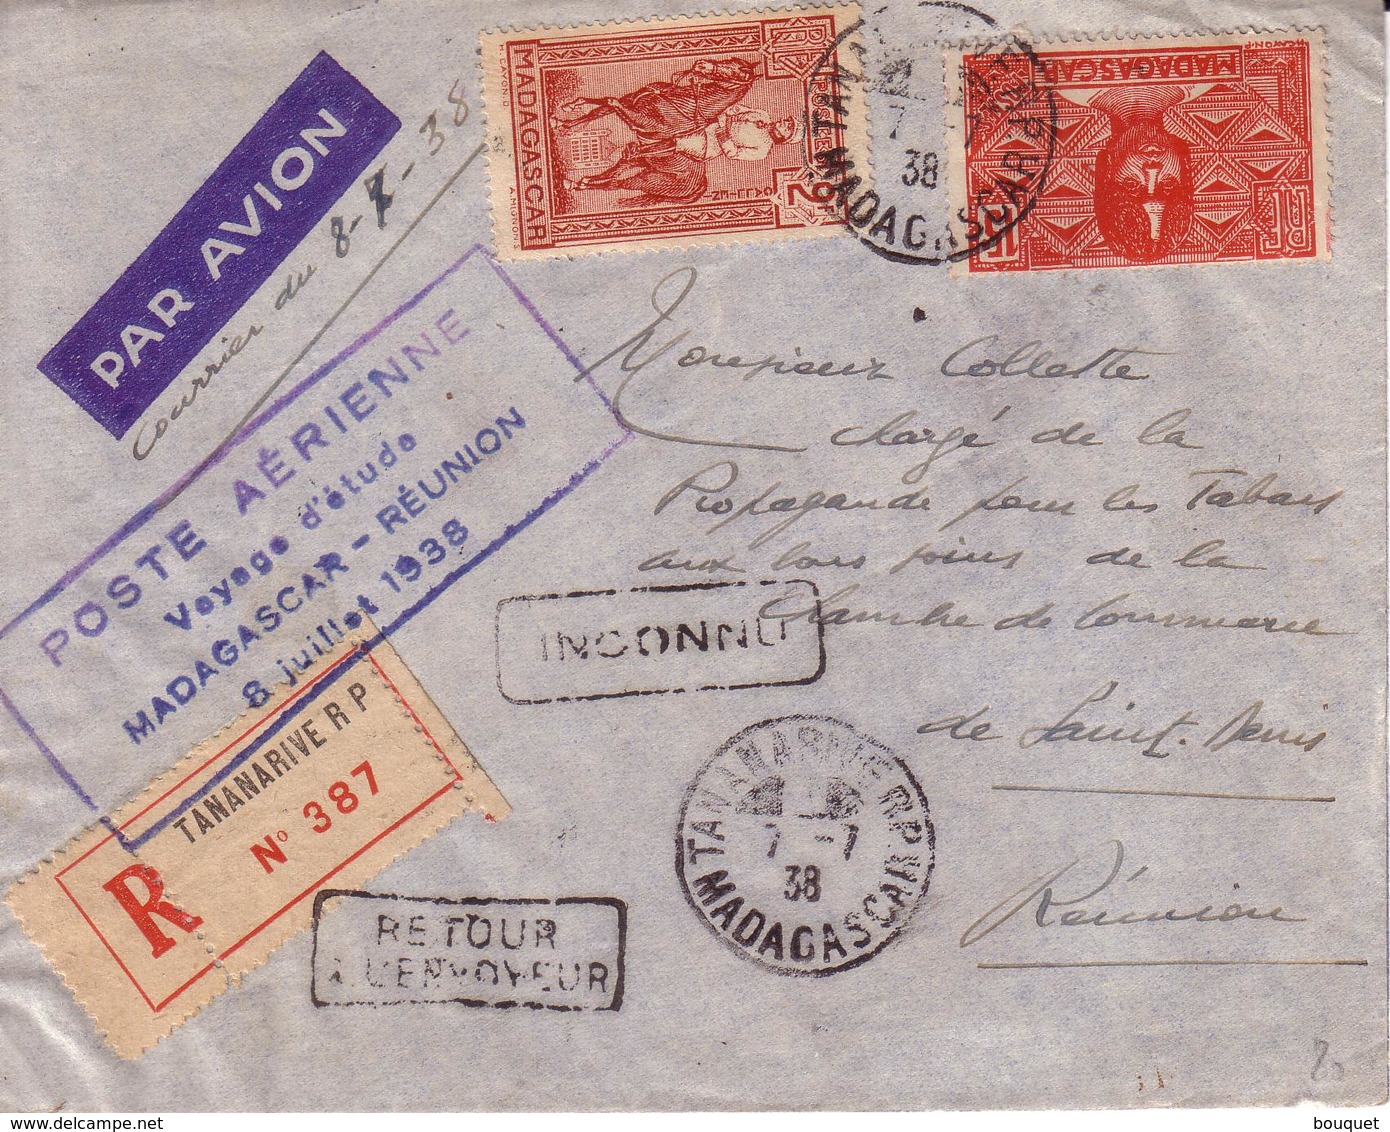 LETTRE TANANARIVE A SAINT DENIS , POSTE AERIENNE VOYAGE D' ETUDE MADAGASCAR REUNION 1938 + RECOMMANDE + RETOUR + INCONNU - Poste Aérienne